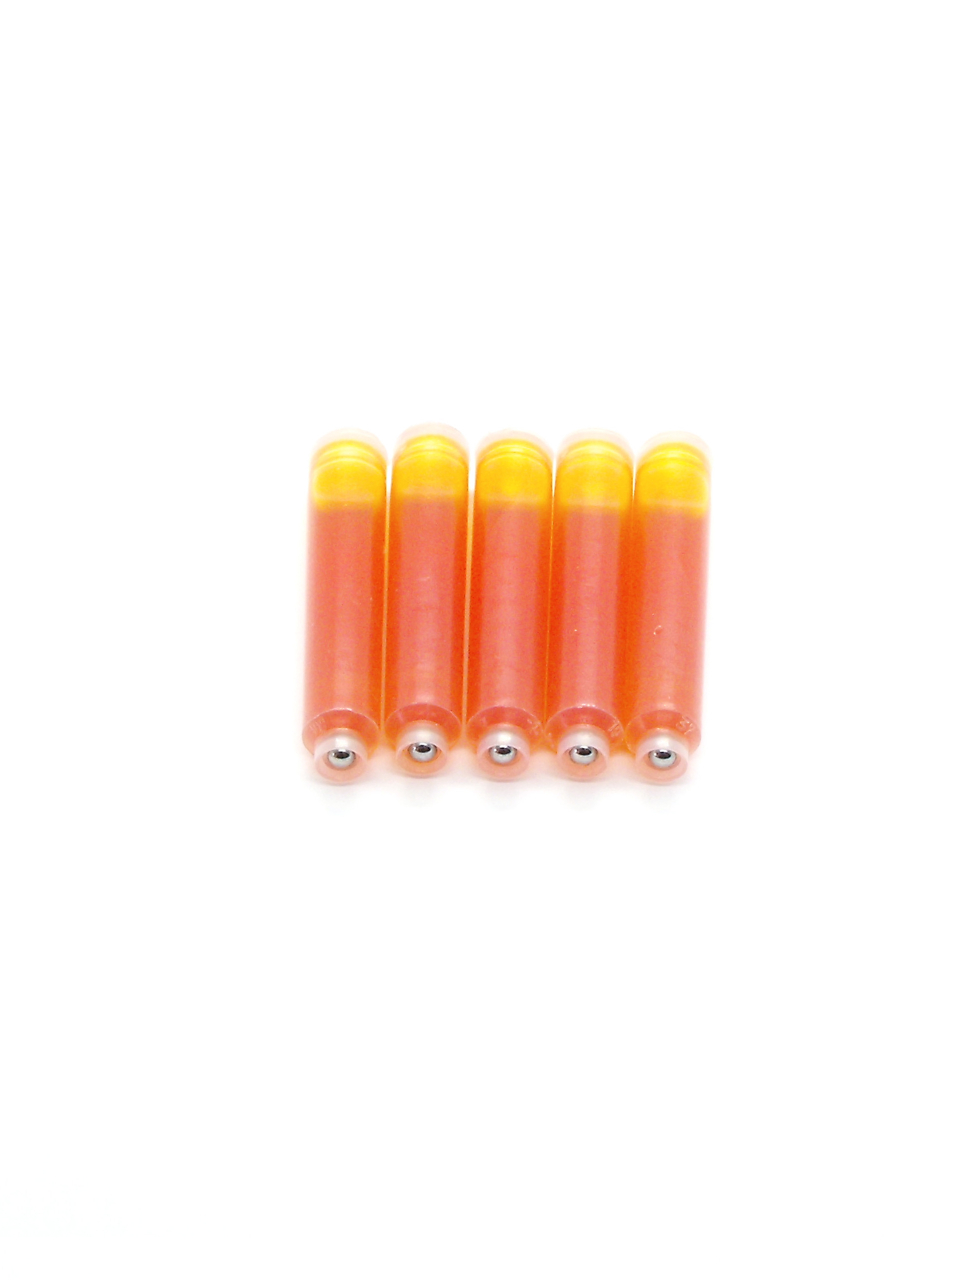 Top Ink Cartridges For Pelikan Fountain Pens (Yellow)